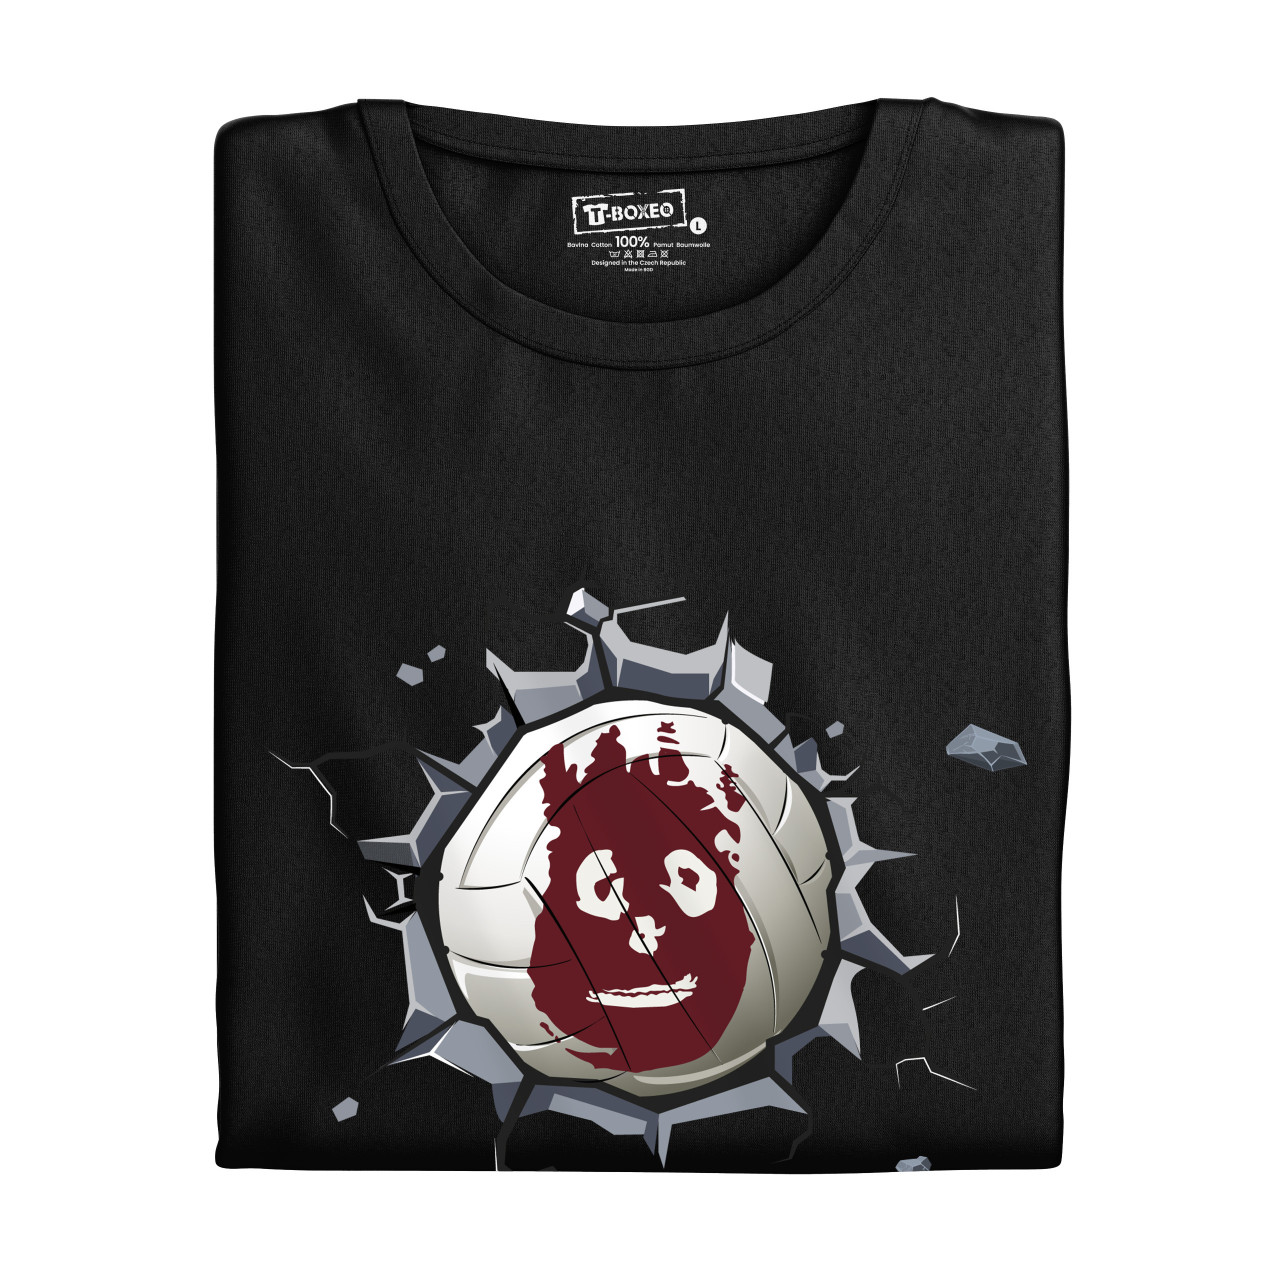 Dámské tričko s potiskem "Wilson"